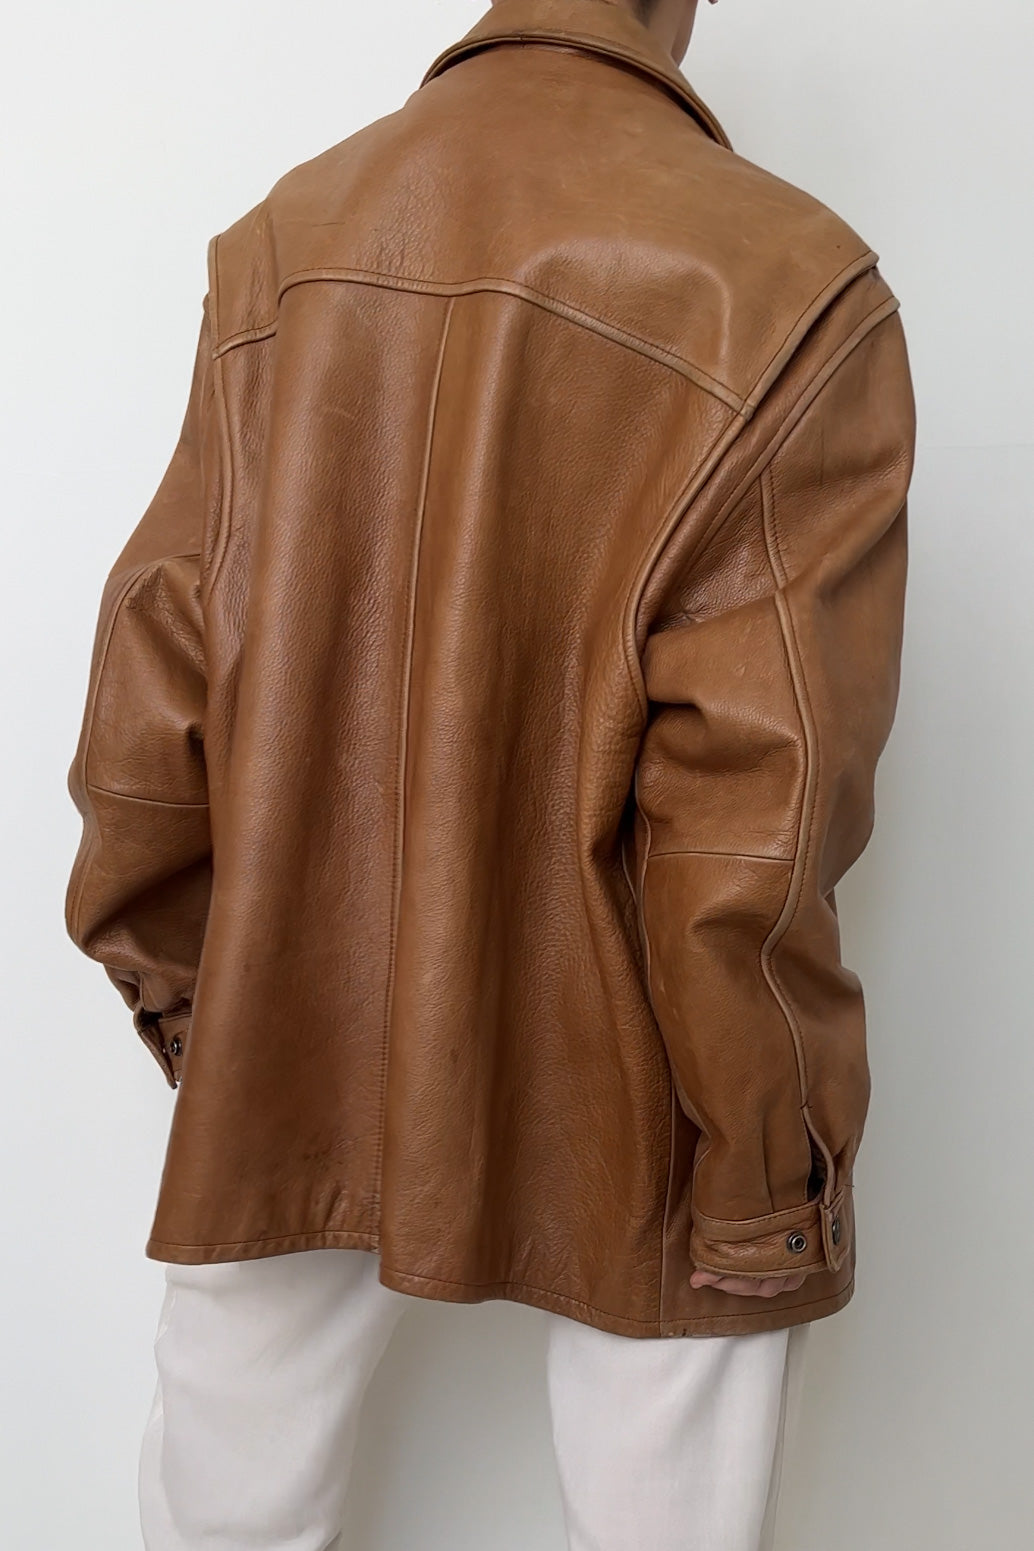 Vintage Caramel Leather Zip Up Jacket